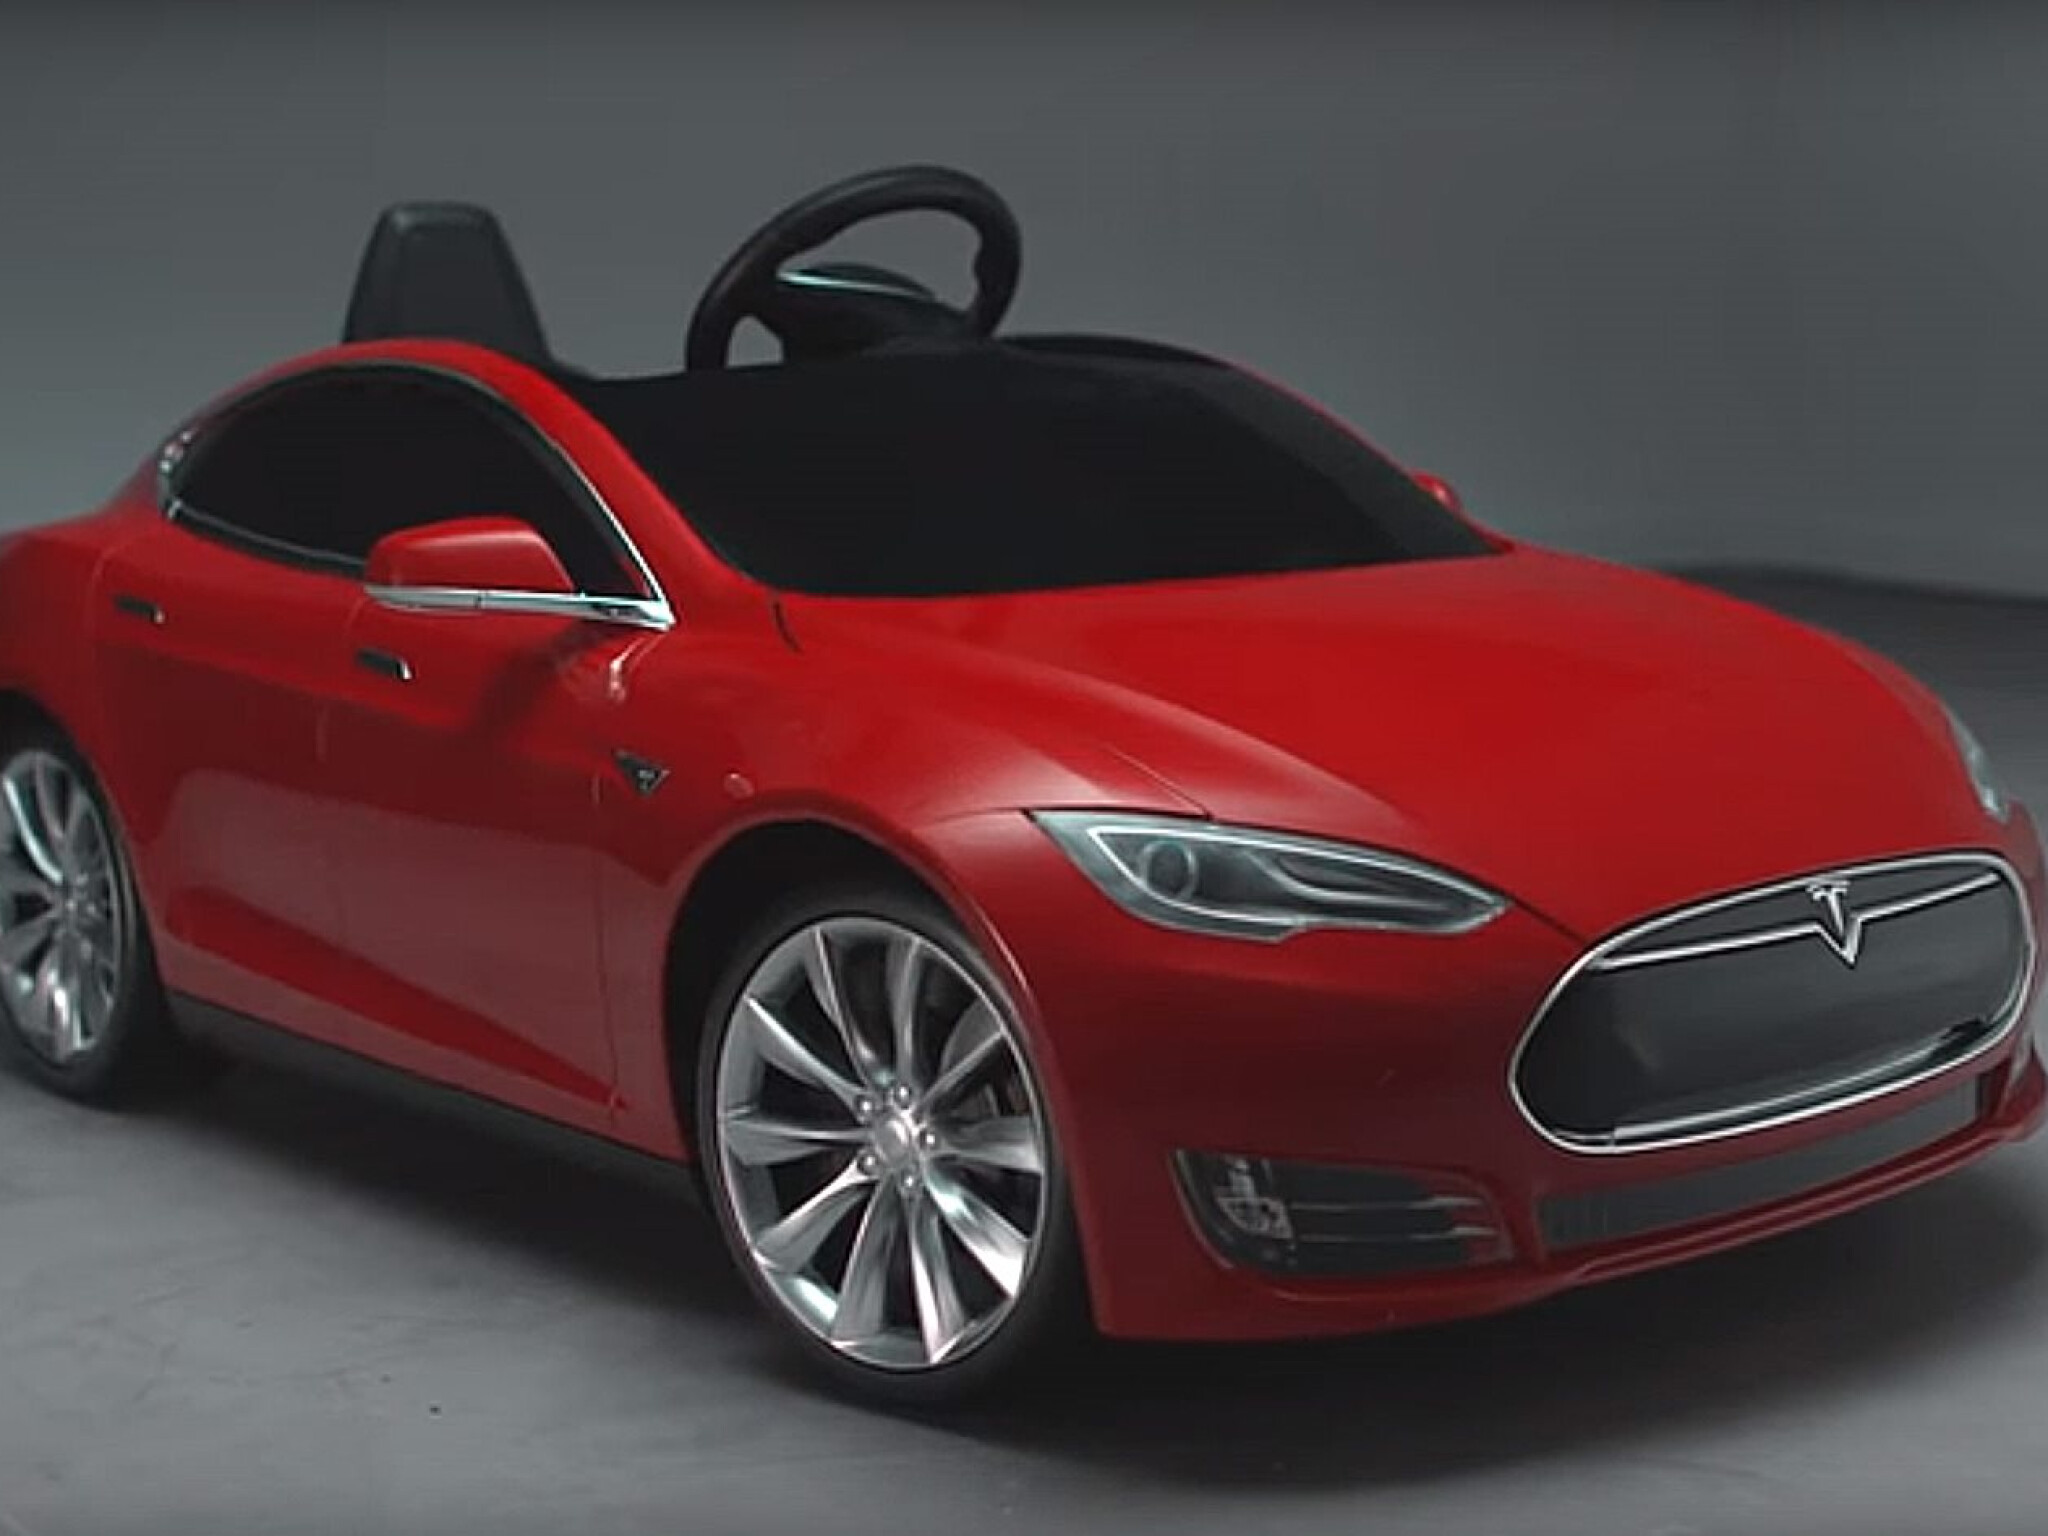 Tesla Model S for Kids Car Cover, Toy Tesla